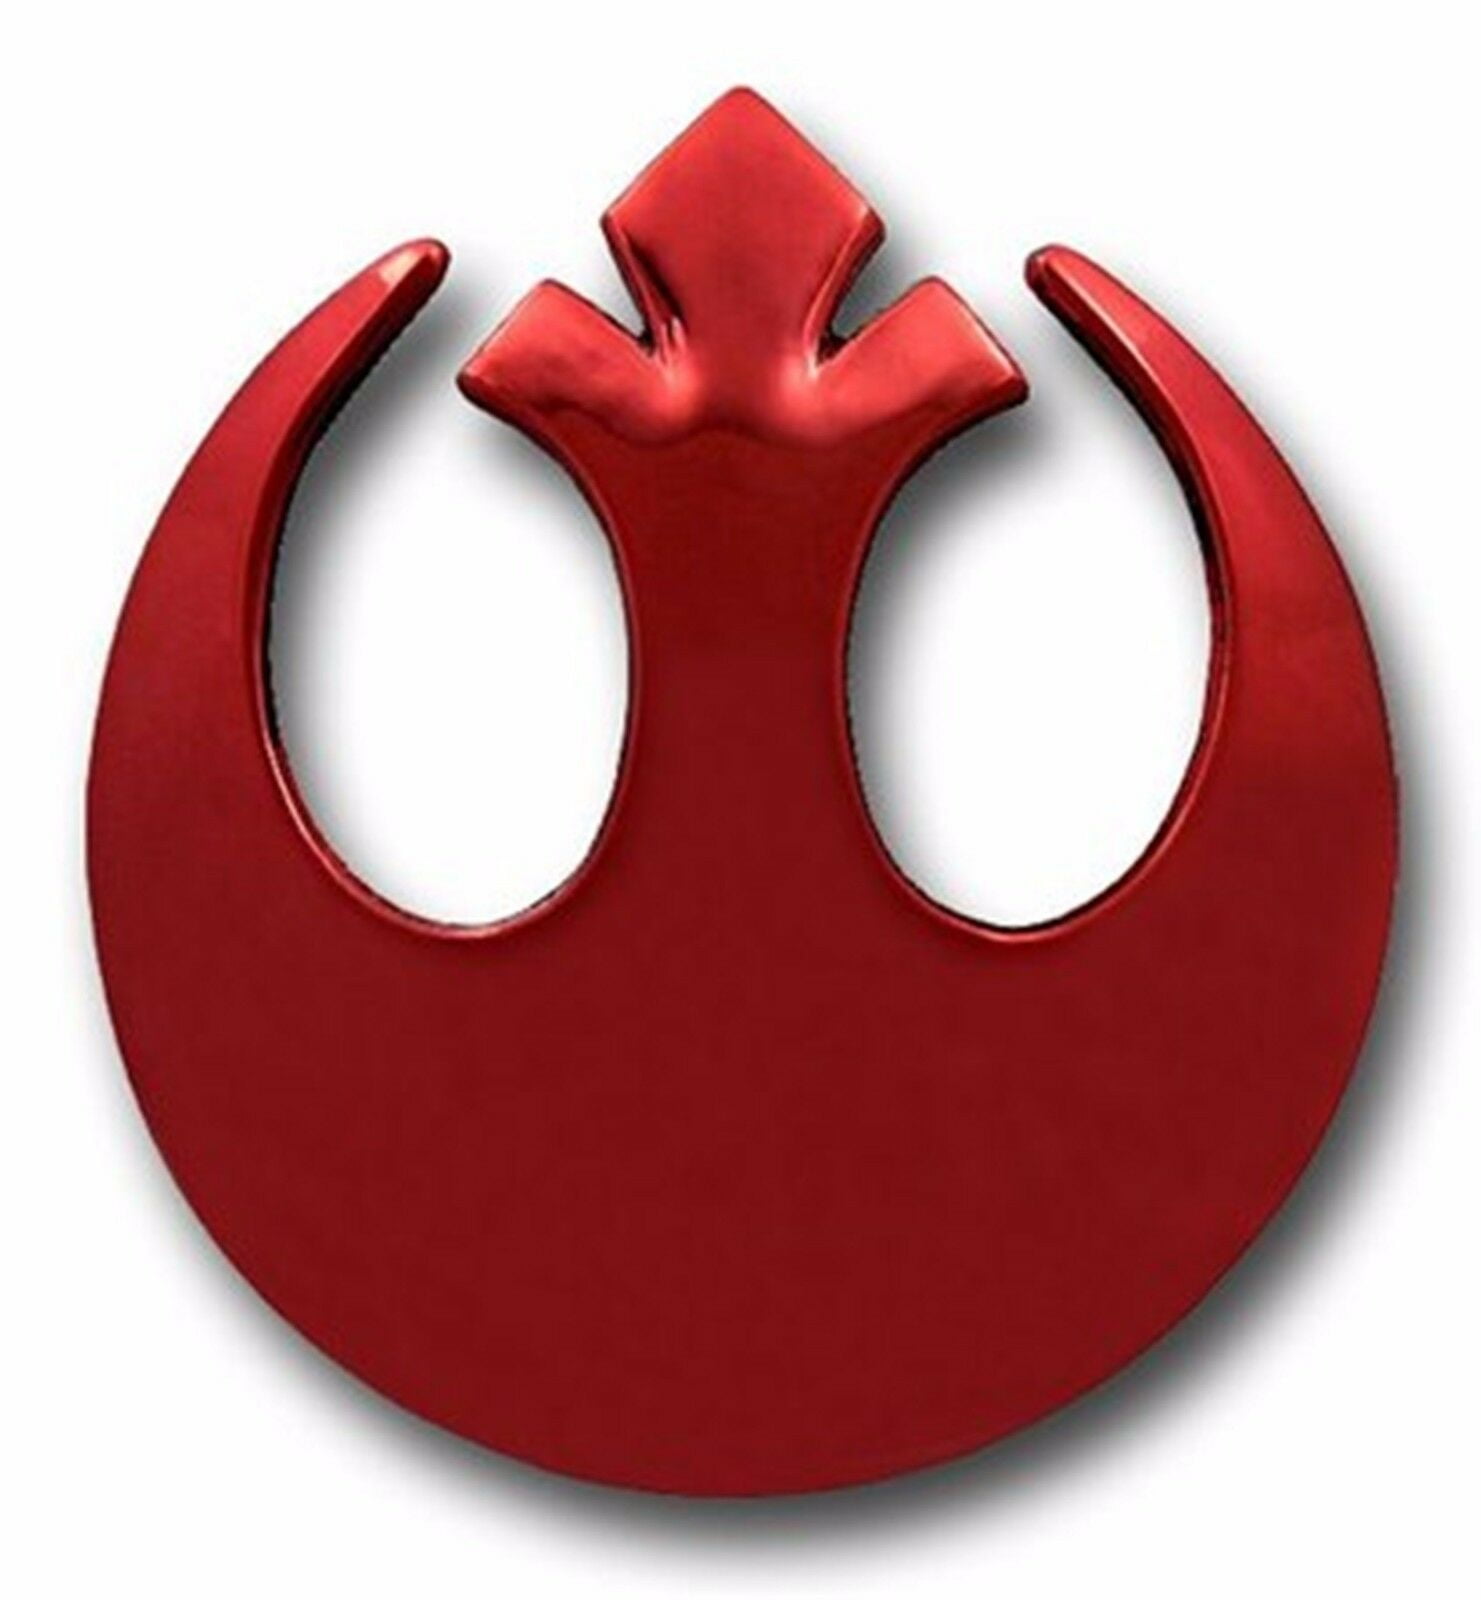 Original STAR WARS metal logo belt buckle Red enamel color  Cosplay or just wear 